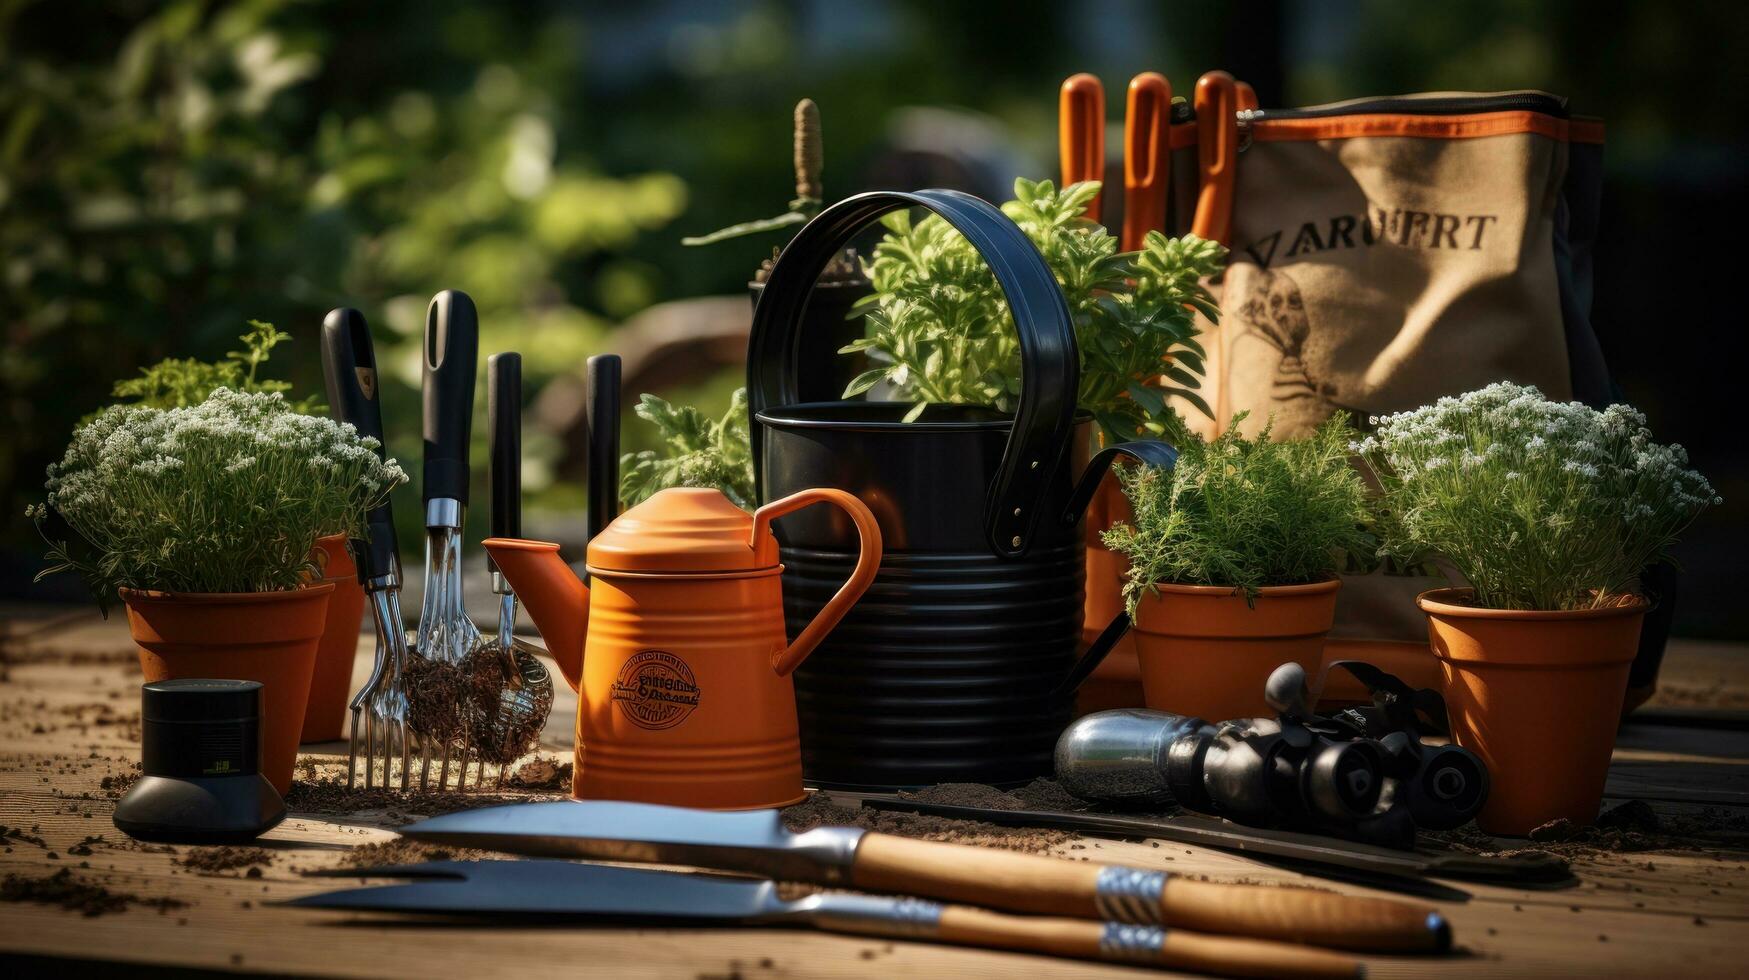 giardinaggio - impostato di utensili per giardiniere e vasi di fiori avvicinamento foto